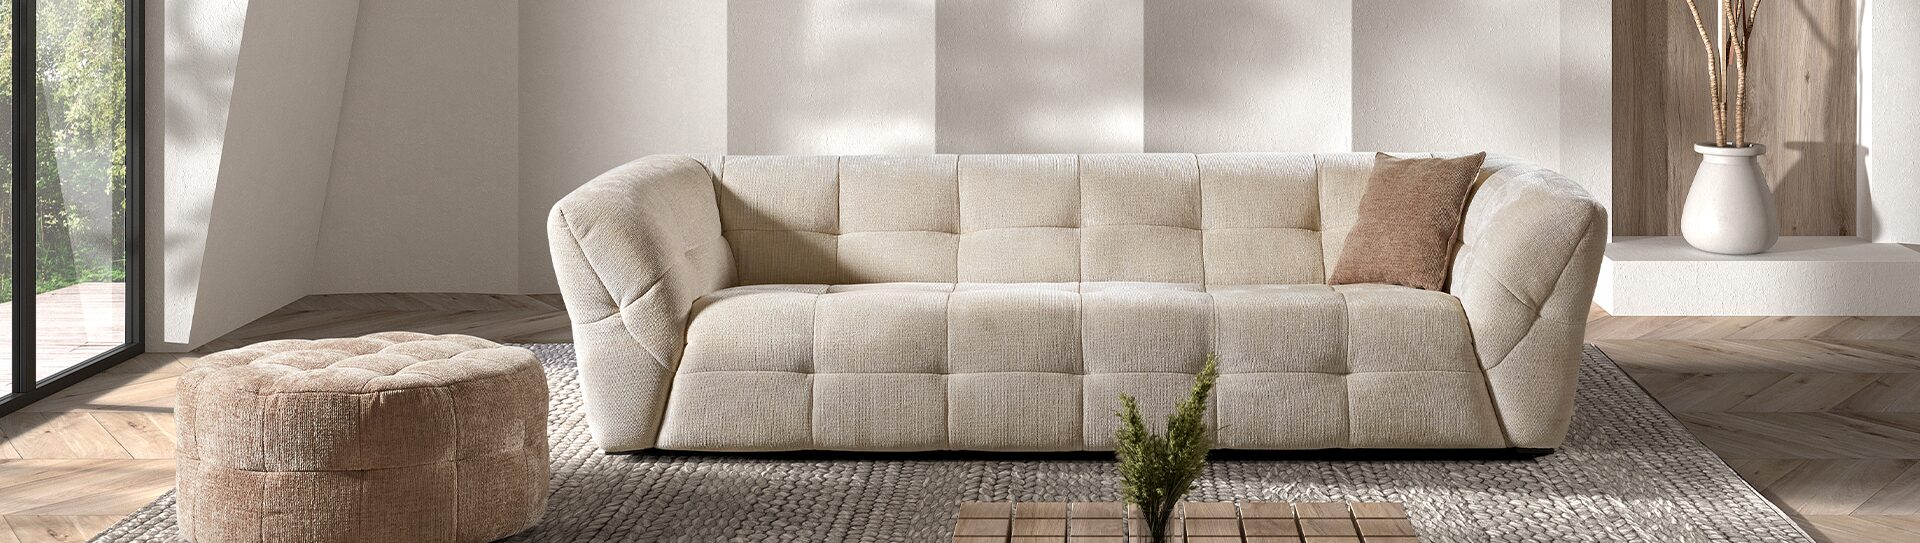 Canapé droit DAISY Canapé 2,5 places beige matelassé et rembourré dans un salon sur un tapis gris et devant un mur blanc avec une ombre d'une feuille de palmier